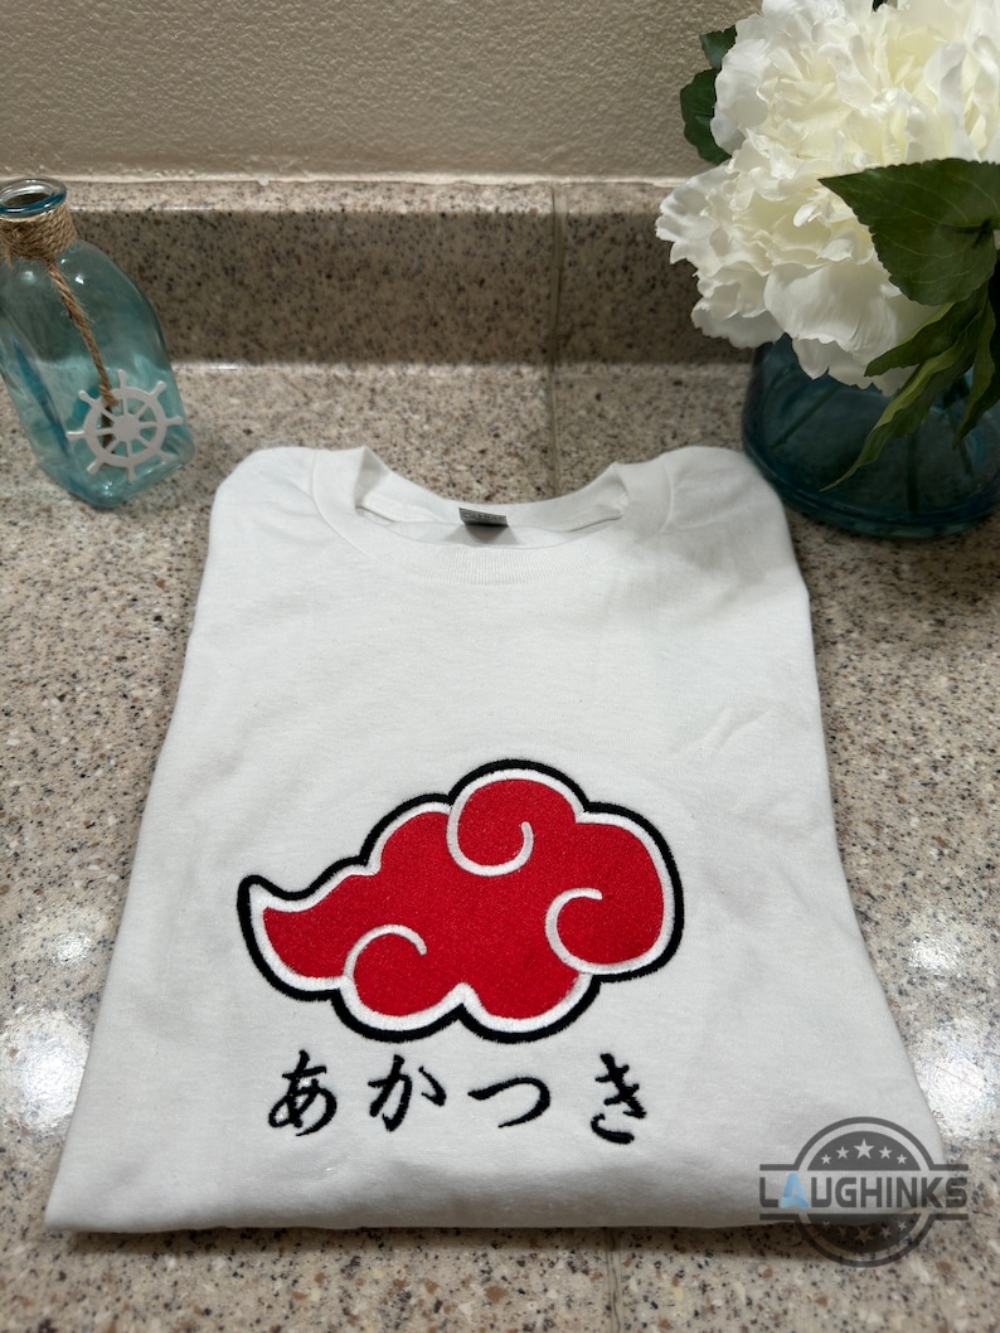 Akatsuki Tshirt Sweatshirt Hoodie Embroidered Naruto Shippuden Akatsuki Organization Super Anime Shirts Akatsuki Red Cloud Embroidery Tee